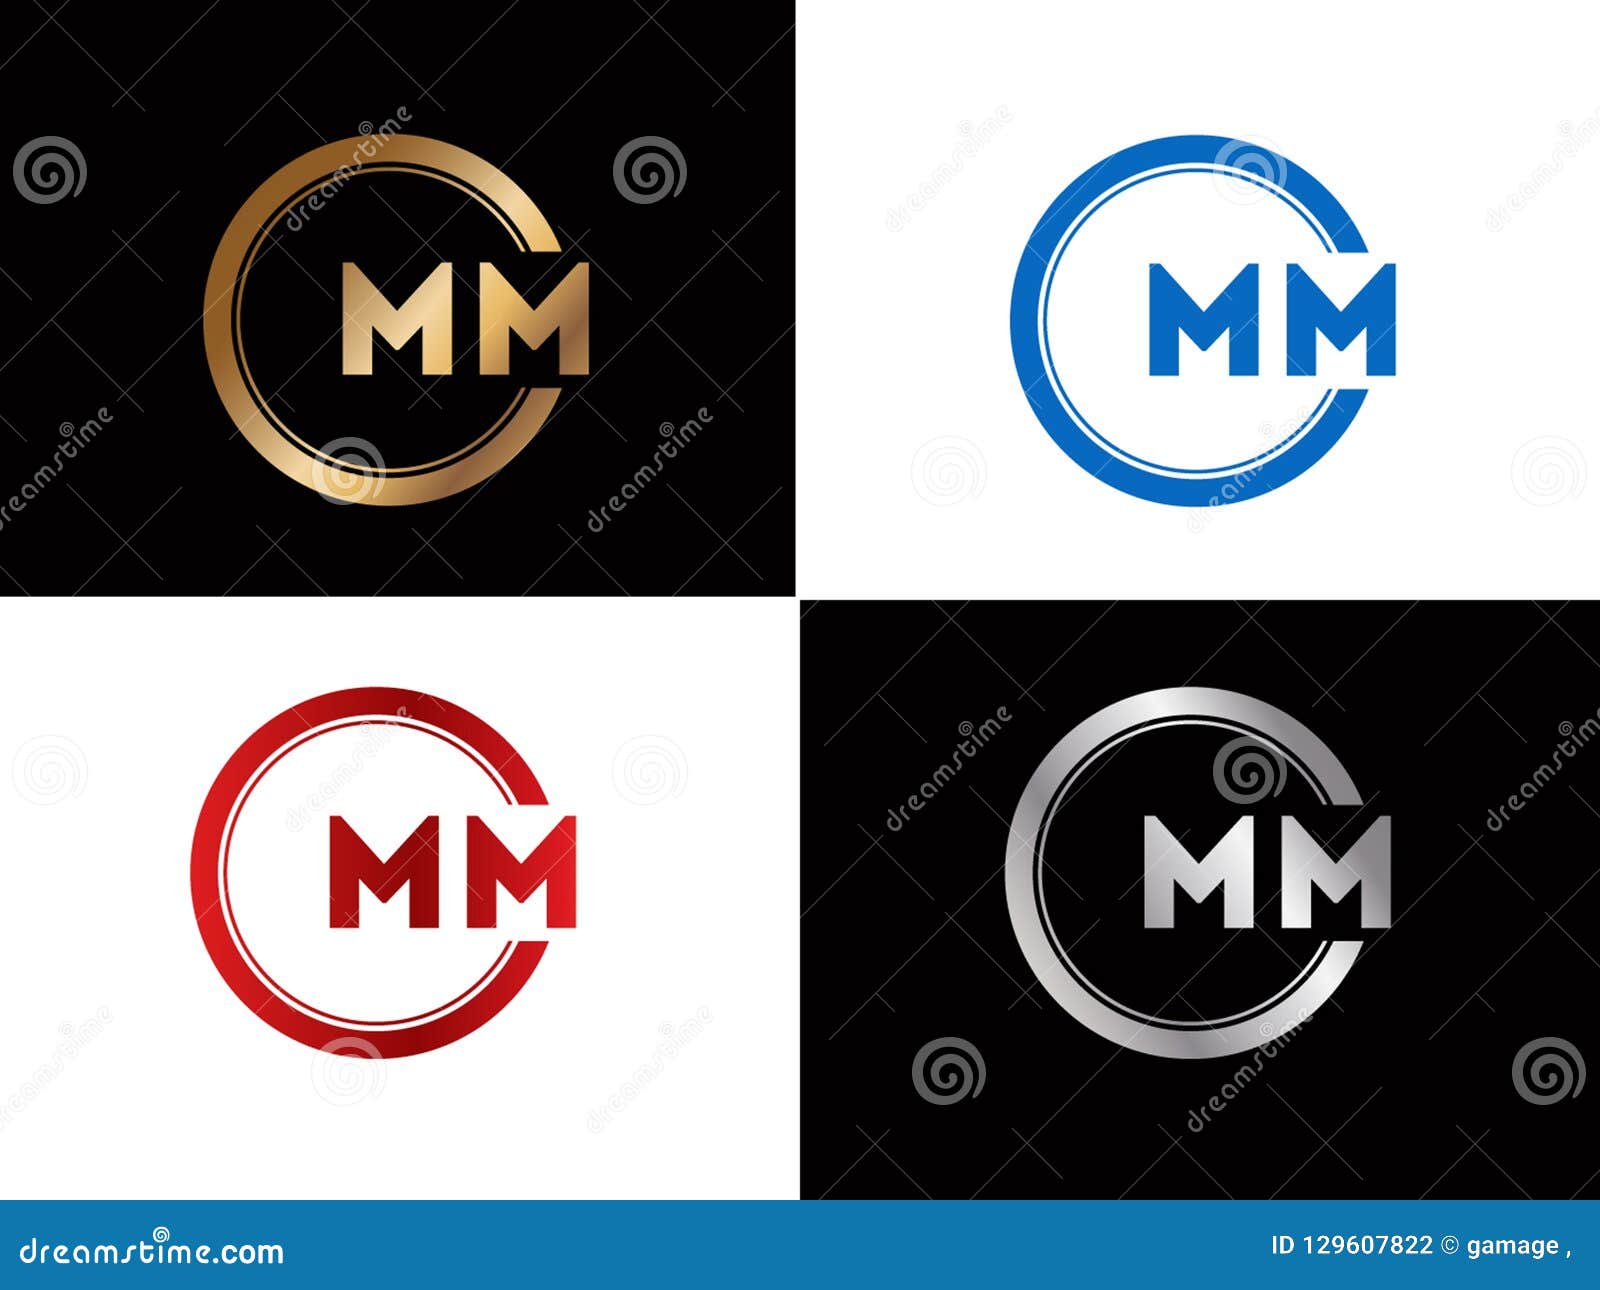 Premium Vector  Initial mm letter logo design vector template abstract  letter mm logo design